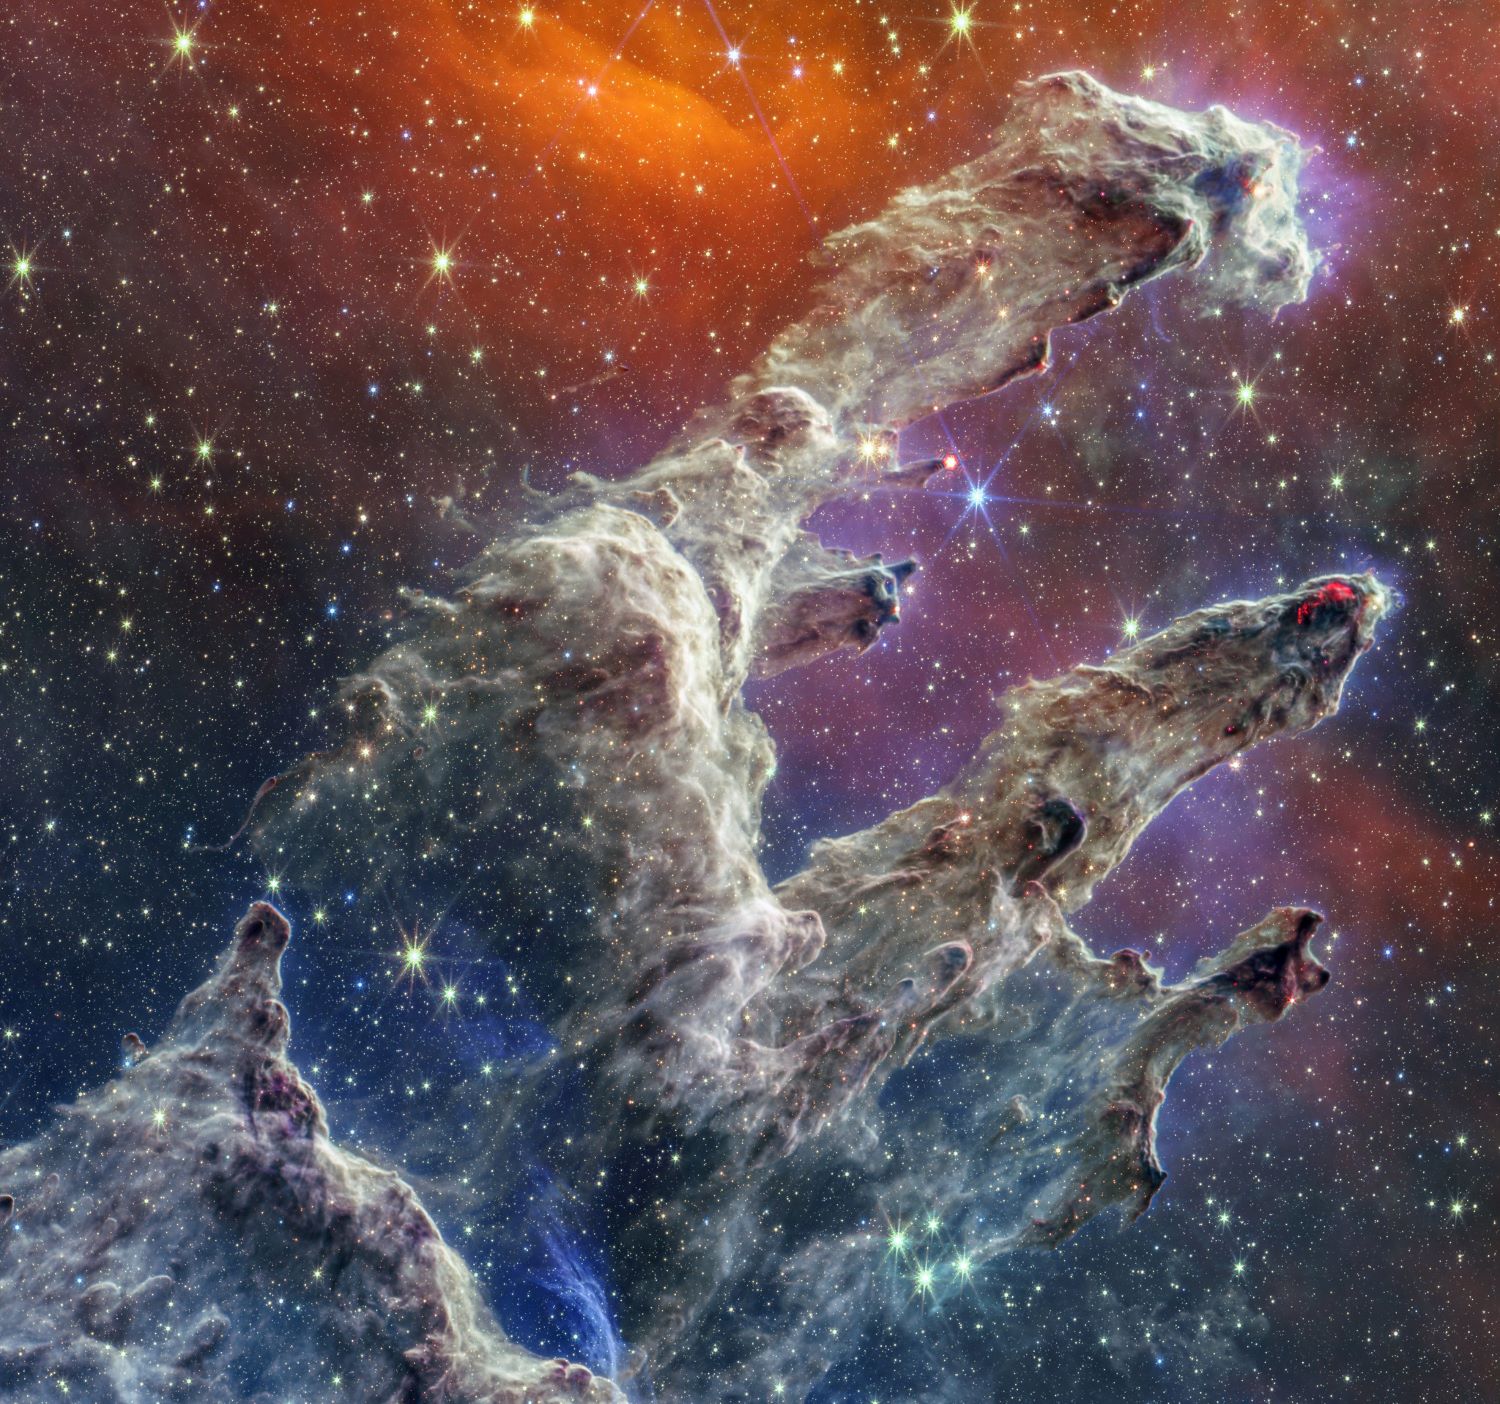 NASAâs James Webb Space Telescope has captured a lush, highly detailed landscape â the iconic Pillars of Creation â where new stars are forming within dense clouds of gas and dust. 